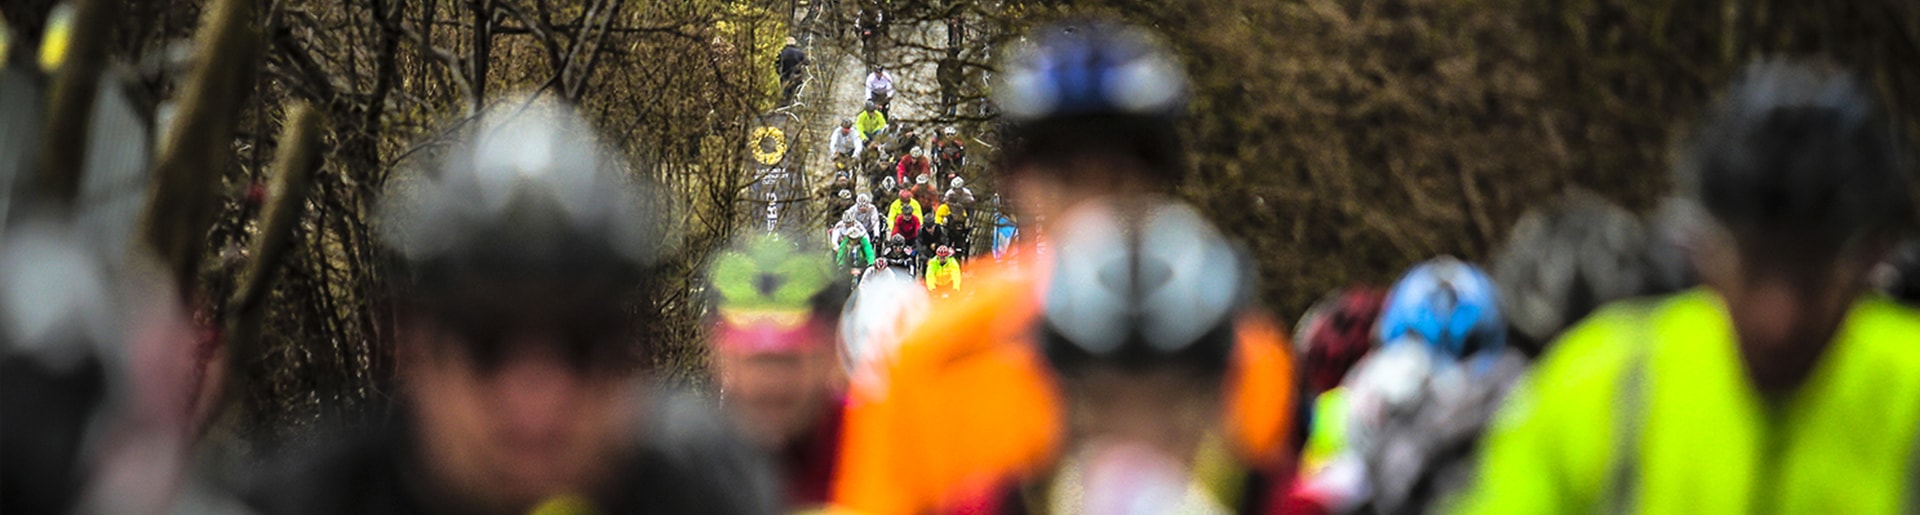 Giro delle Fiandre 2018 con Bike Division Tour Operator